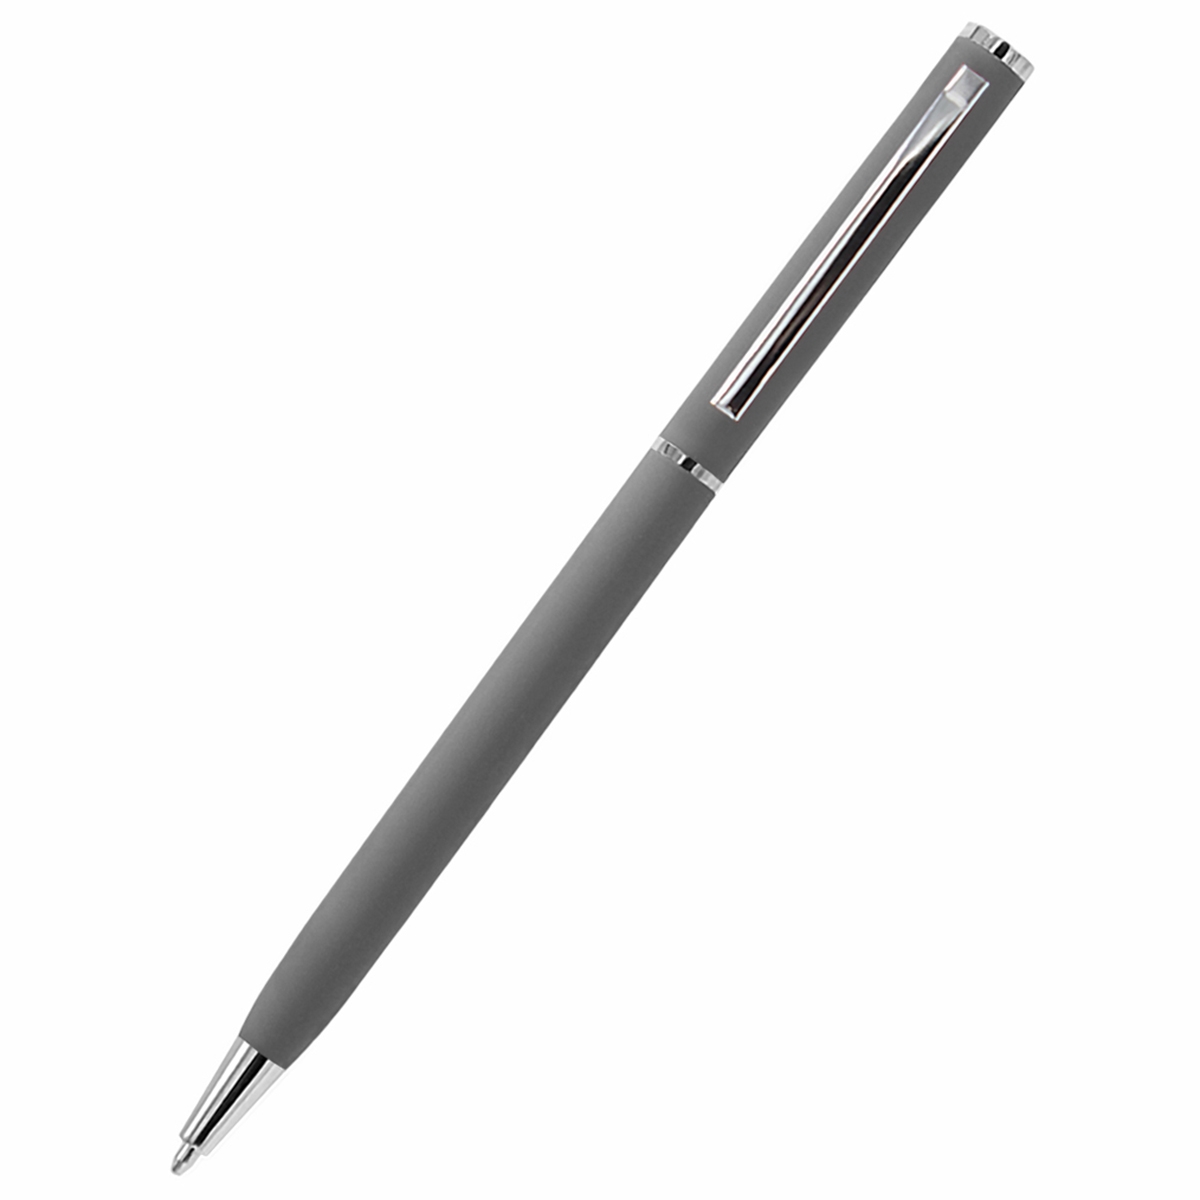 Ручка металлическая Tinny Soft софт-тач, серая, серый